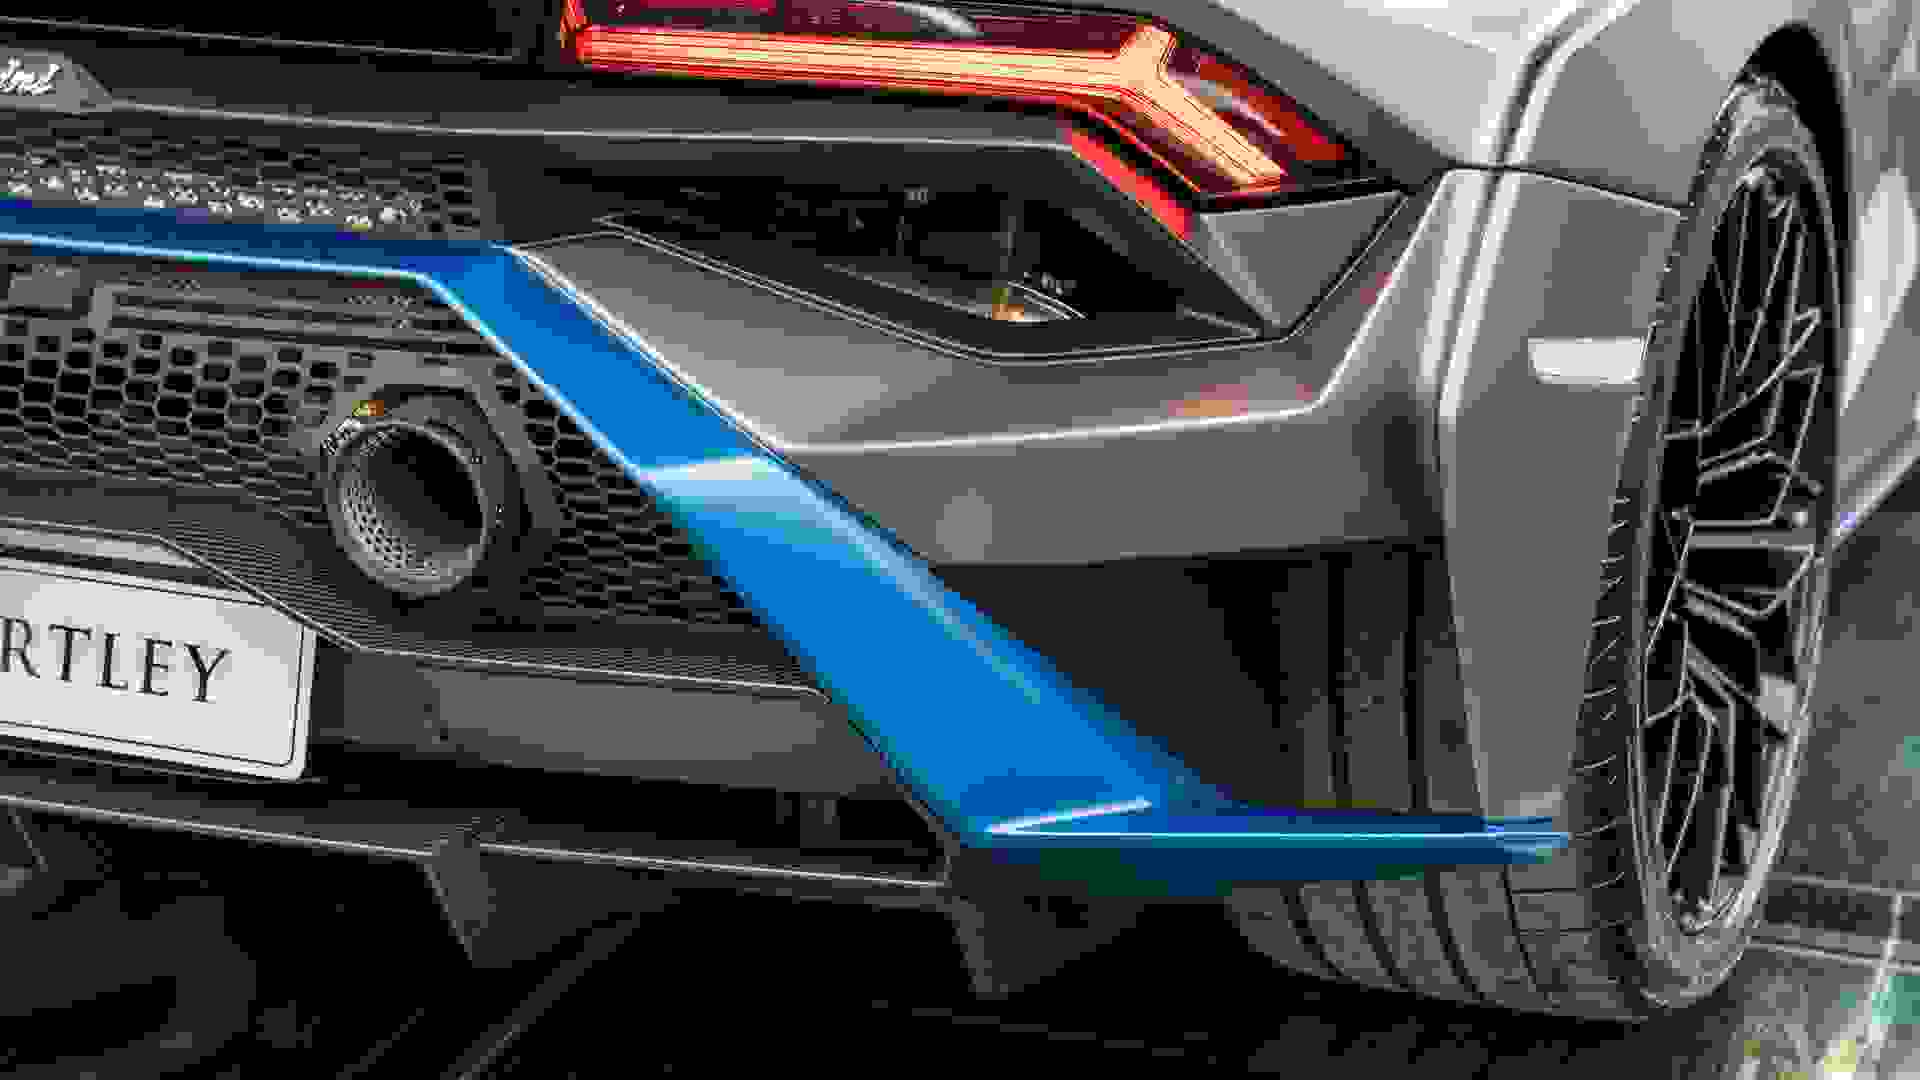 Lamborghini Huracan Photo 4a5f91be-6e4c-45d7-a55a-381b991a9f29.jpg